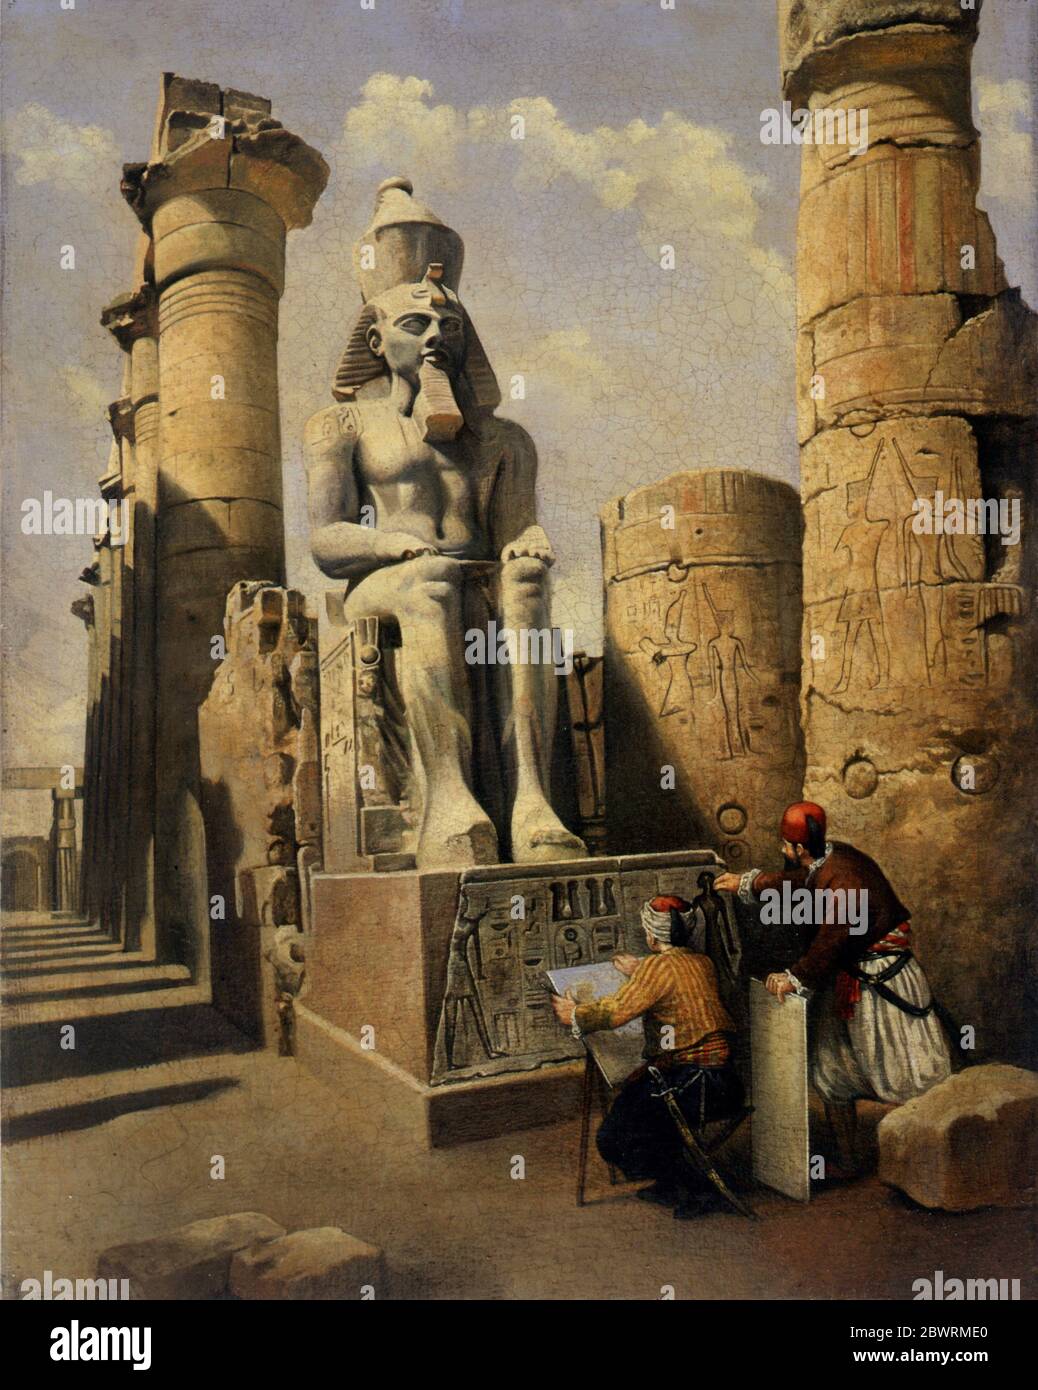 Artista dibujando la estatua del faraón en Egipto por Bob Venables Foto de stock